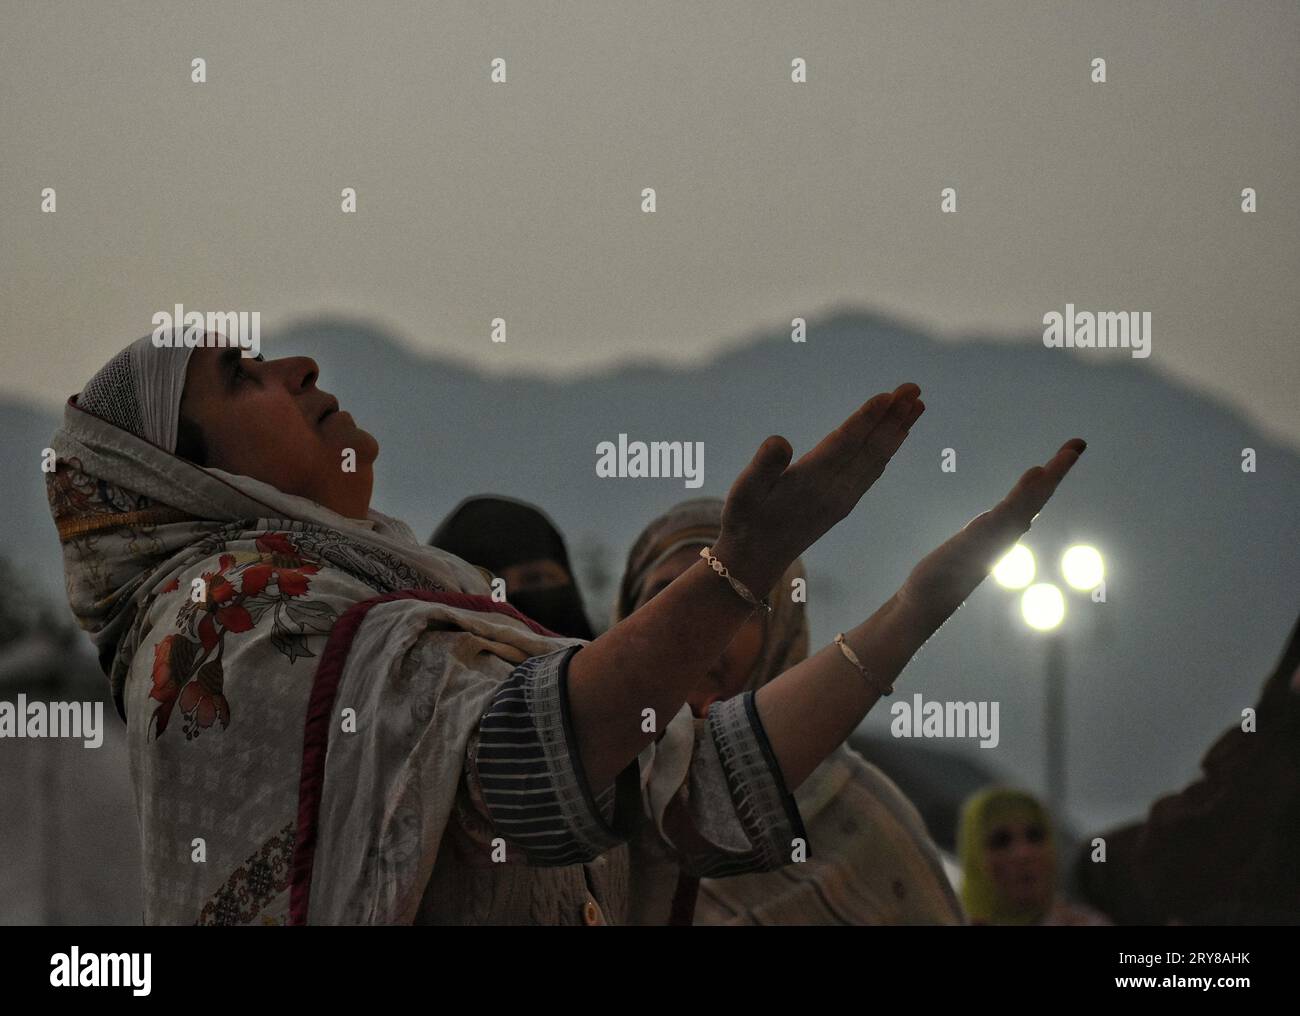 29 septembre 2023, Srinagar Cachemire, Inde : Une femme musulmane cachemirienne prie avant que le chef religieux (invisible) affiche la relique sainte à l'occasion de l'anniversaire de naissance de Mawlid-un-Nabi ou Prophète Muhammad (PBUH) dans le sanctuaire Dargah Hazratbal à Srinagar. Des centaines de milliers de musulmans de tout le Cachemire visitent le sanctuaire Hazratbal à Srinagar pour rendre hommage à l'anniversaire de naissance du prophète Mahomet (PBUH). Le sanctuaire est hautement vénéré par les musulmans cachemiris car il est censé abriter une relique sainte du prophète Mahomet (PBUH). La relique est affichée aux dévots sur important d islamique Banque D'Images